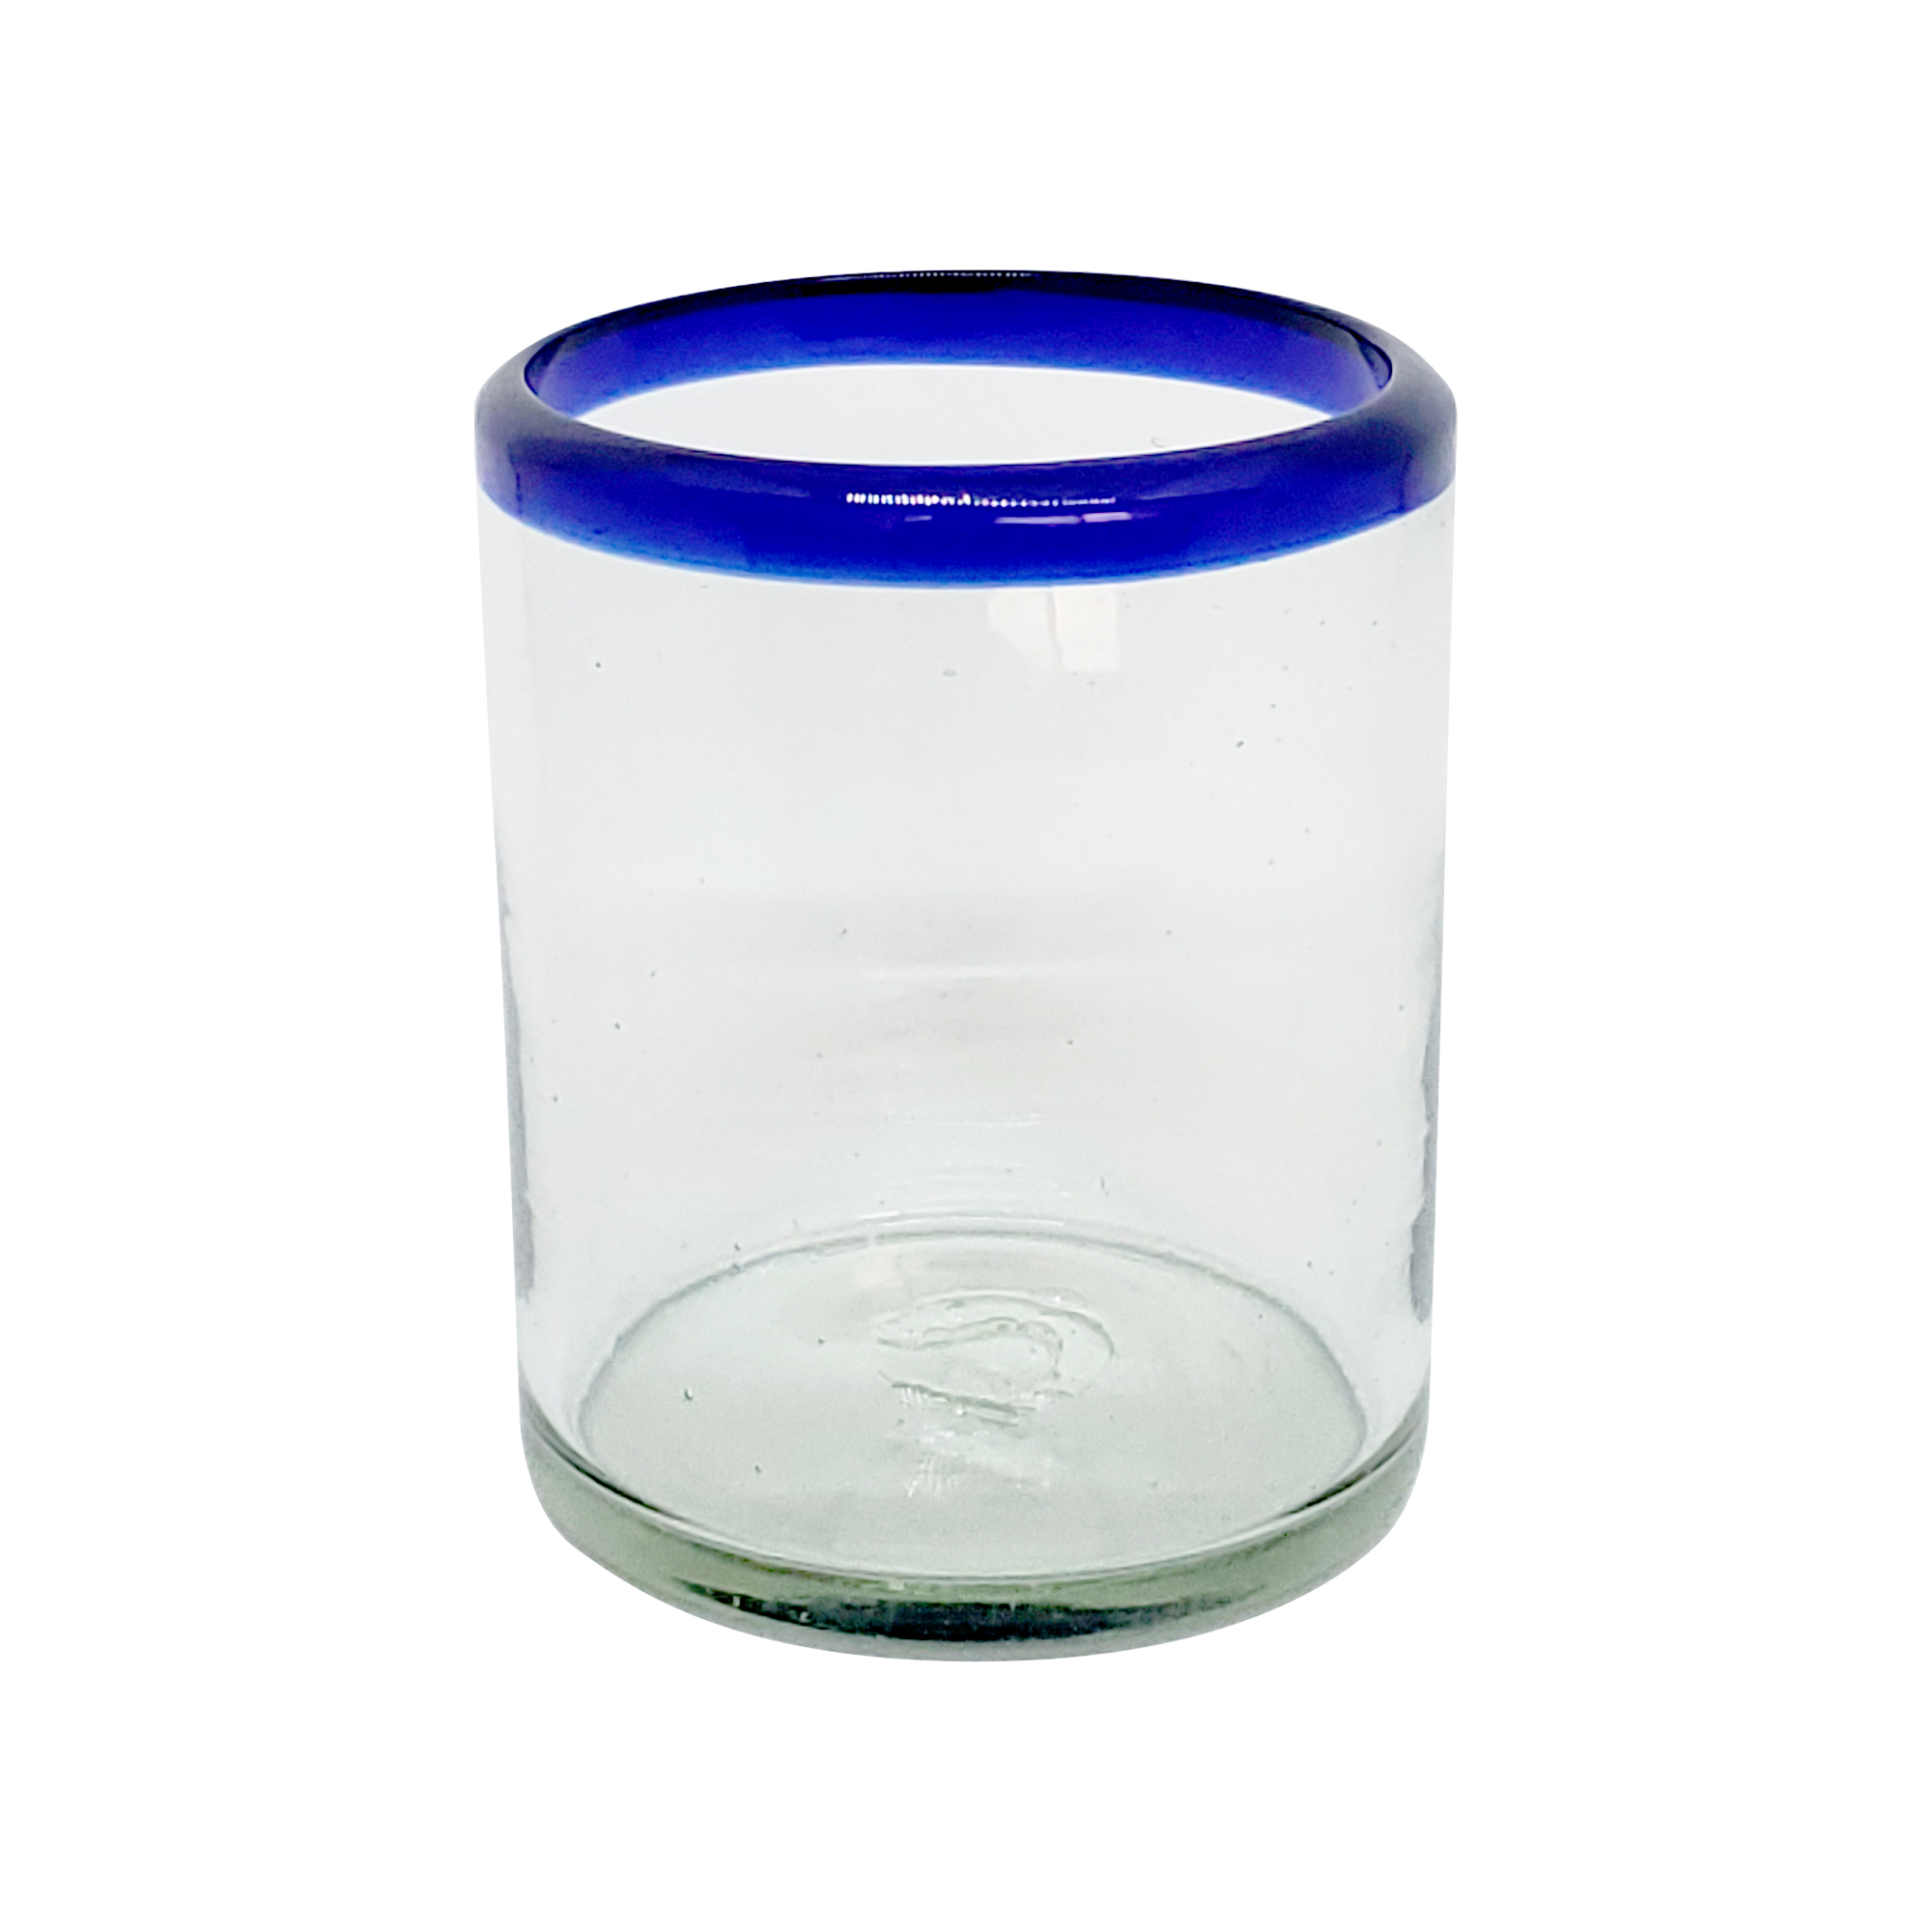 VIDRIO SOPLADO / vasos chicos con borde azul cobalto, 10 oz, Vidrio Reciclado, Libre de Plomo y Toxinas